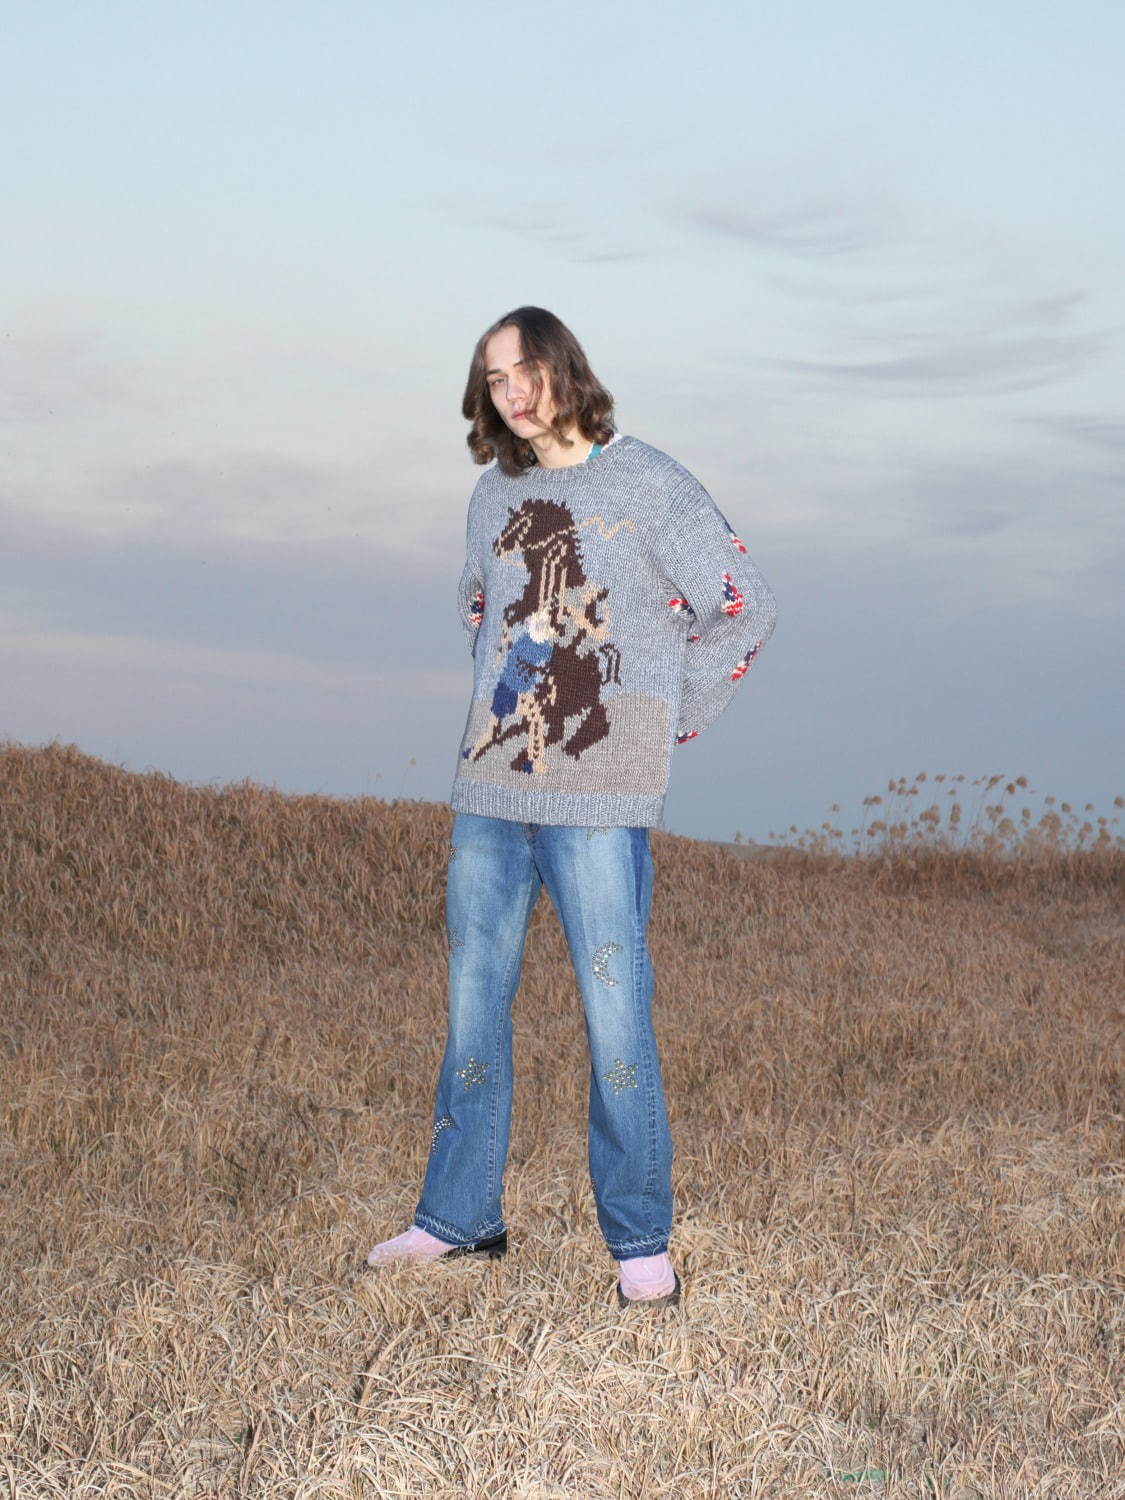 ジエダ 21 22年秋冬コレクション 70年代の乾いたアメリカ カウボーイスタイルの転生 ファッションプレス